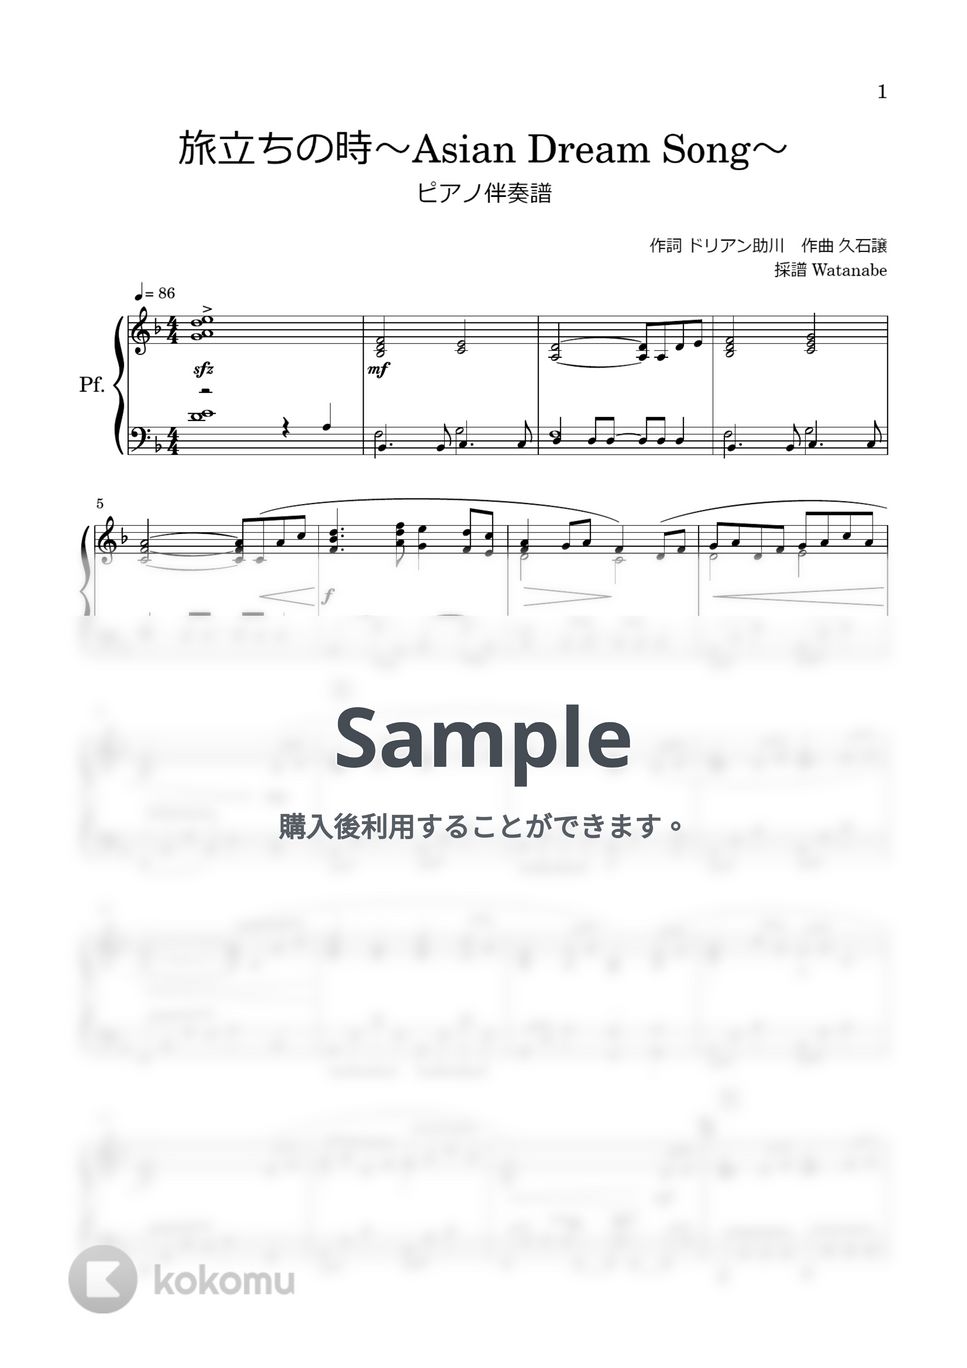 久石譲 - 旅立ちの時～Asian Dream Song～ (ピアノ伴奏譜) by わたなべももこ